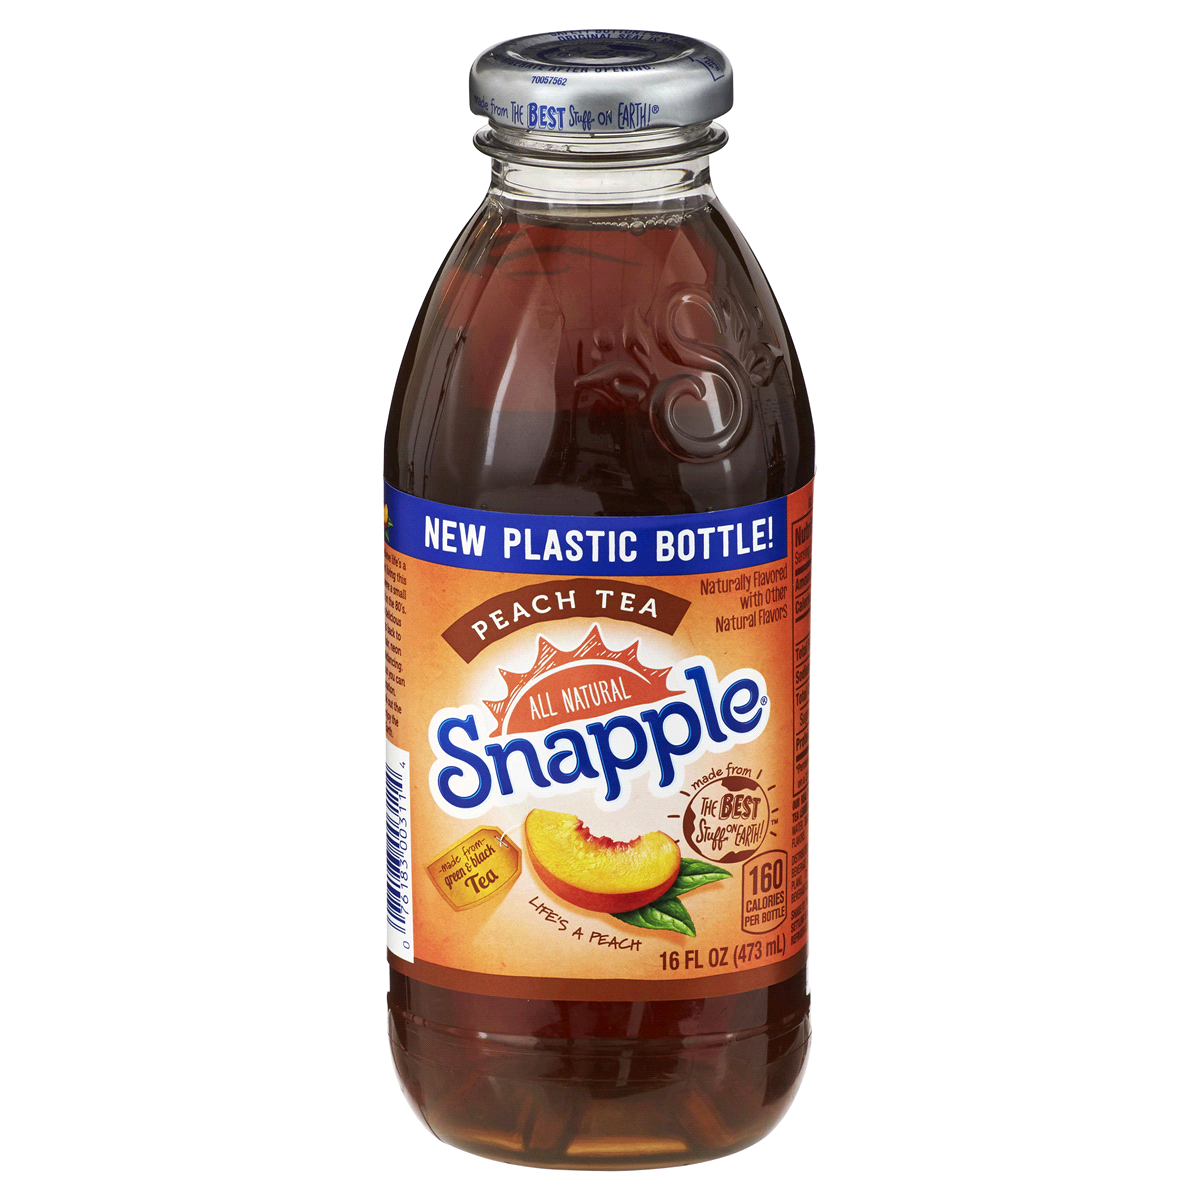 Beverage / Juice / Snapple Peach Tea